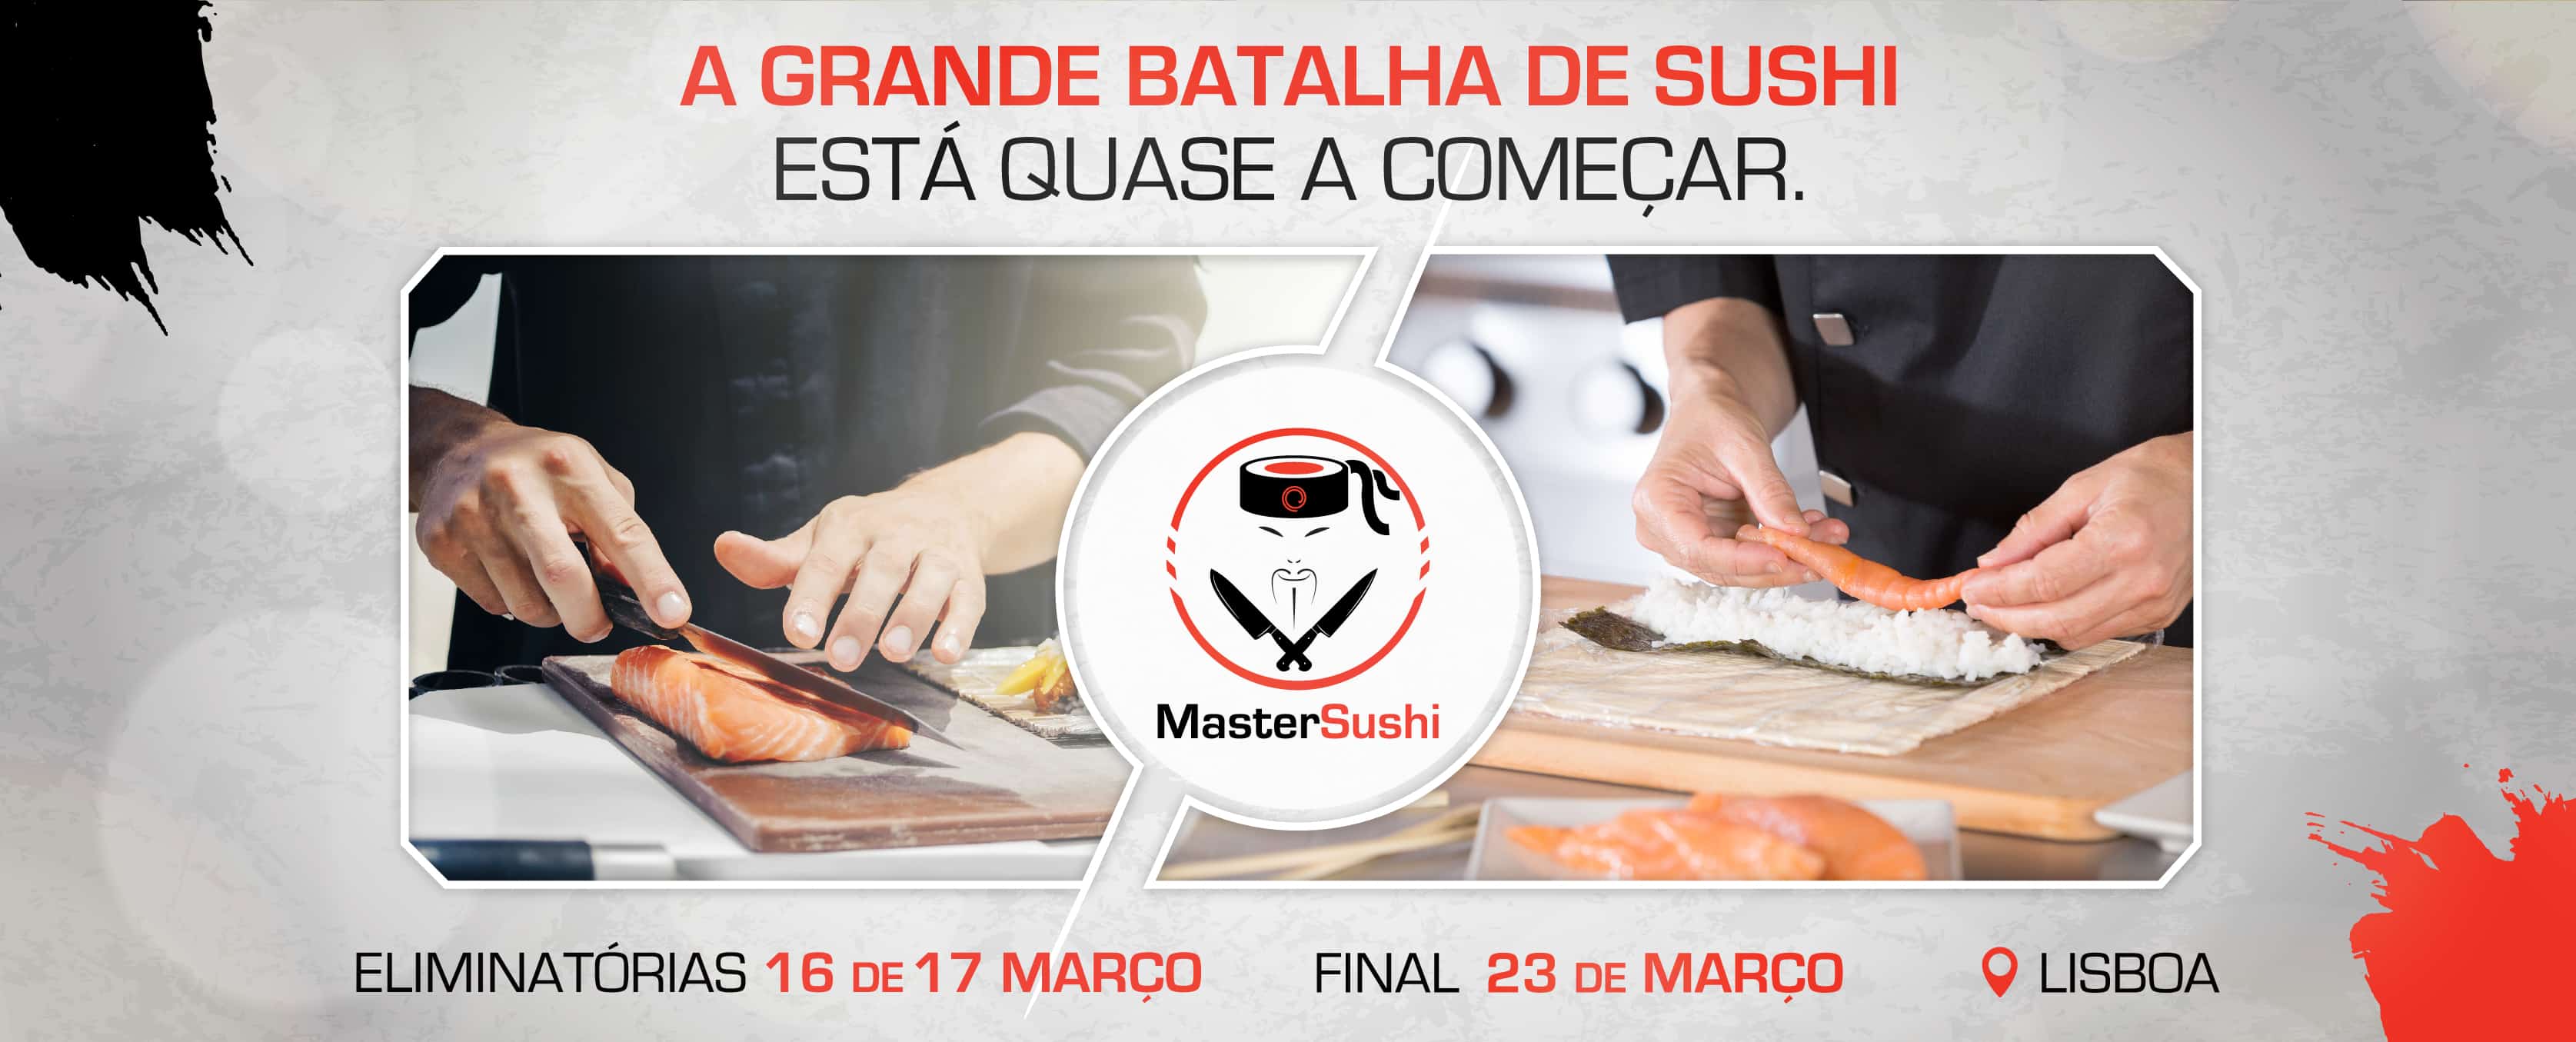 MasterSushi – A grande batalha de sushi está quase a começar